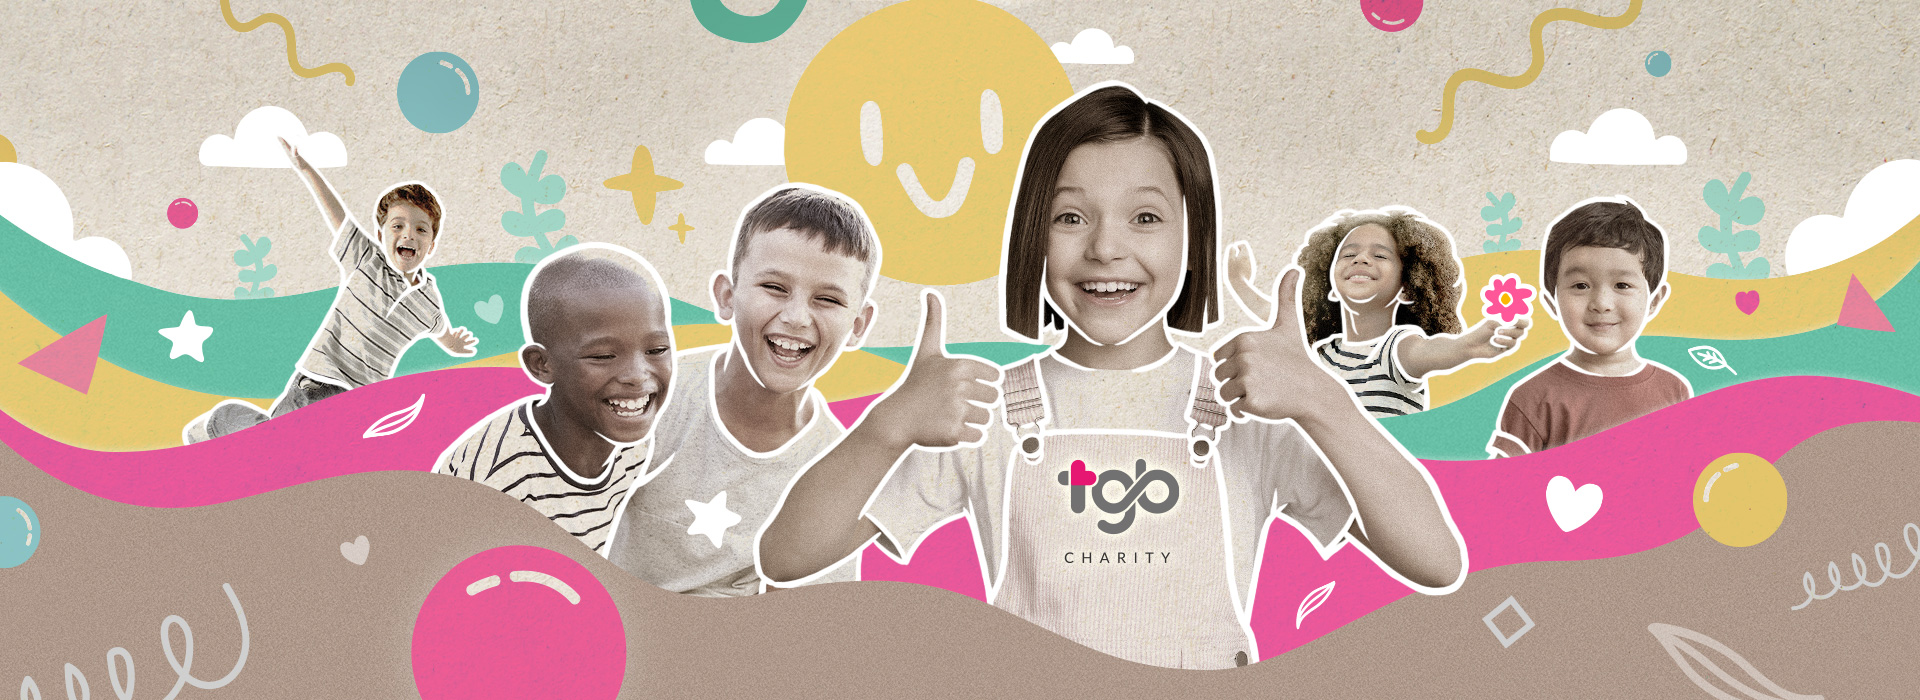 TGB Charity: 弱势孩童需要什么? 这个视频告诉你!